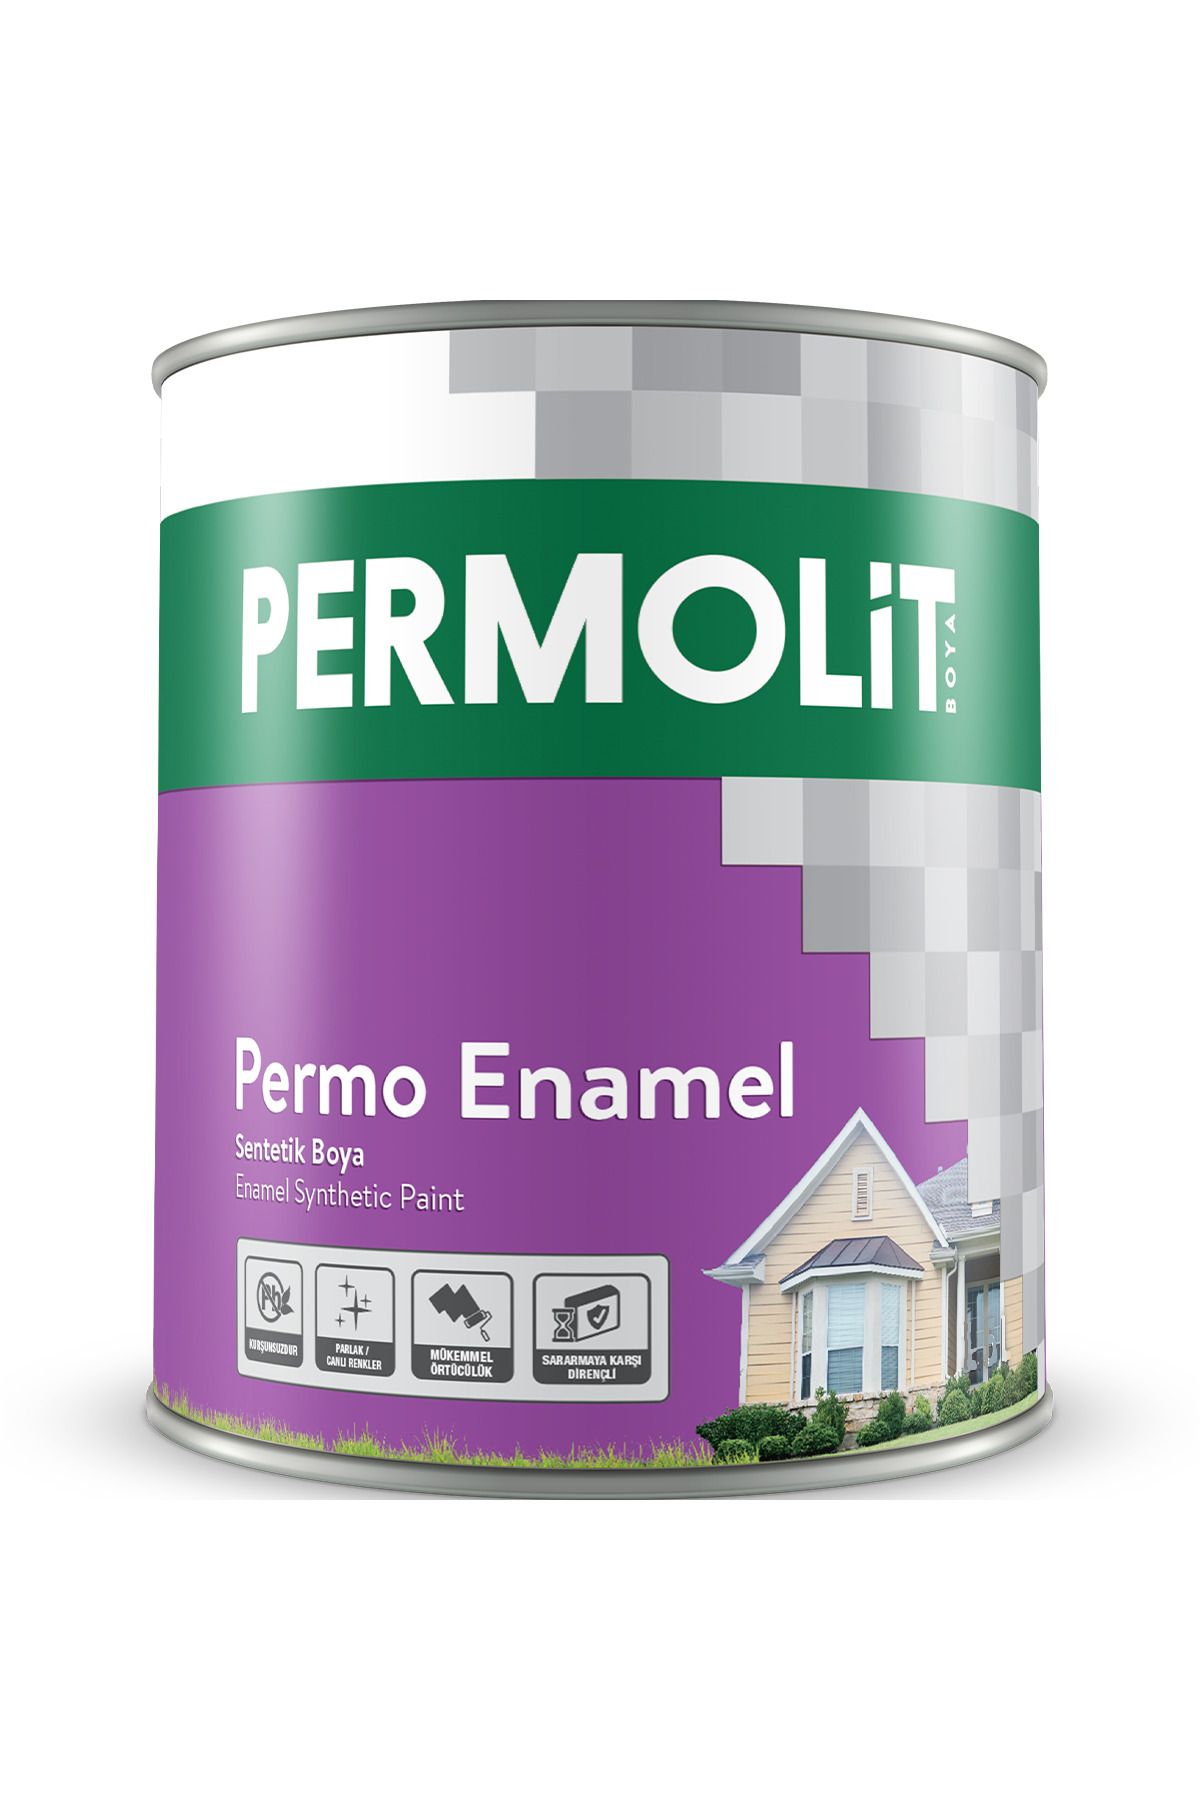 Permolit Permo Enamel Kırık Beyaz Sentetik Boya 0,25 Lt. 34 Farklı Renk